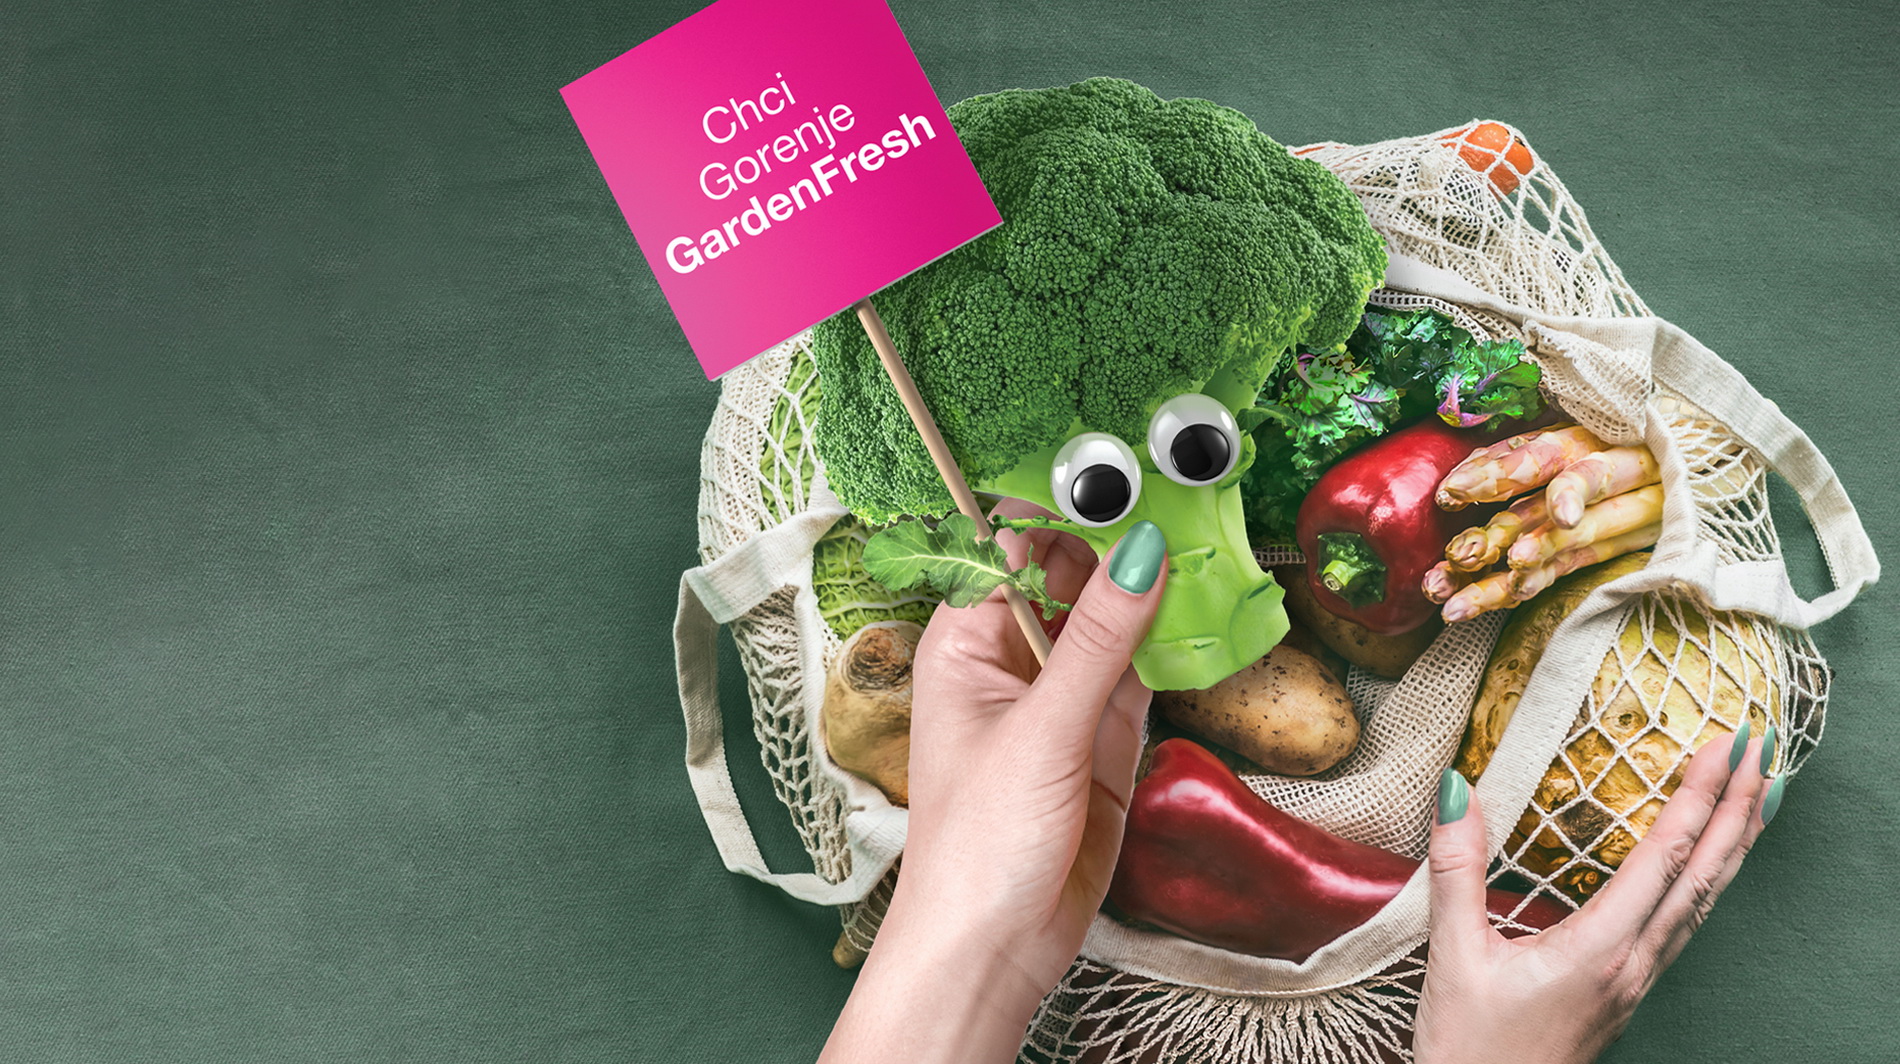 Gorenje / Brand activation
Život zelenině!